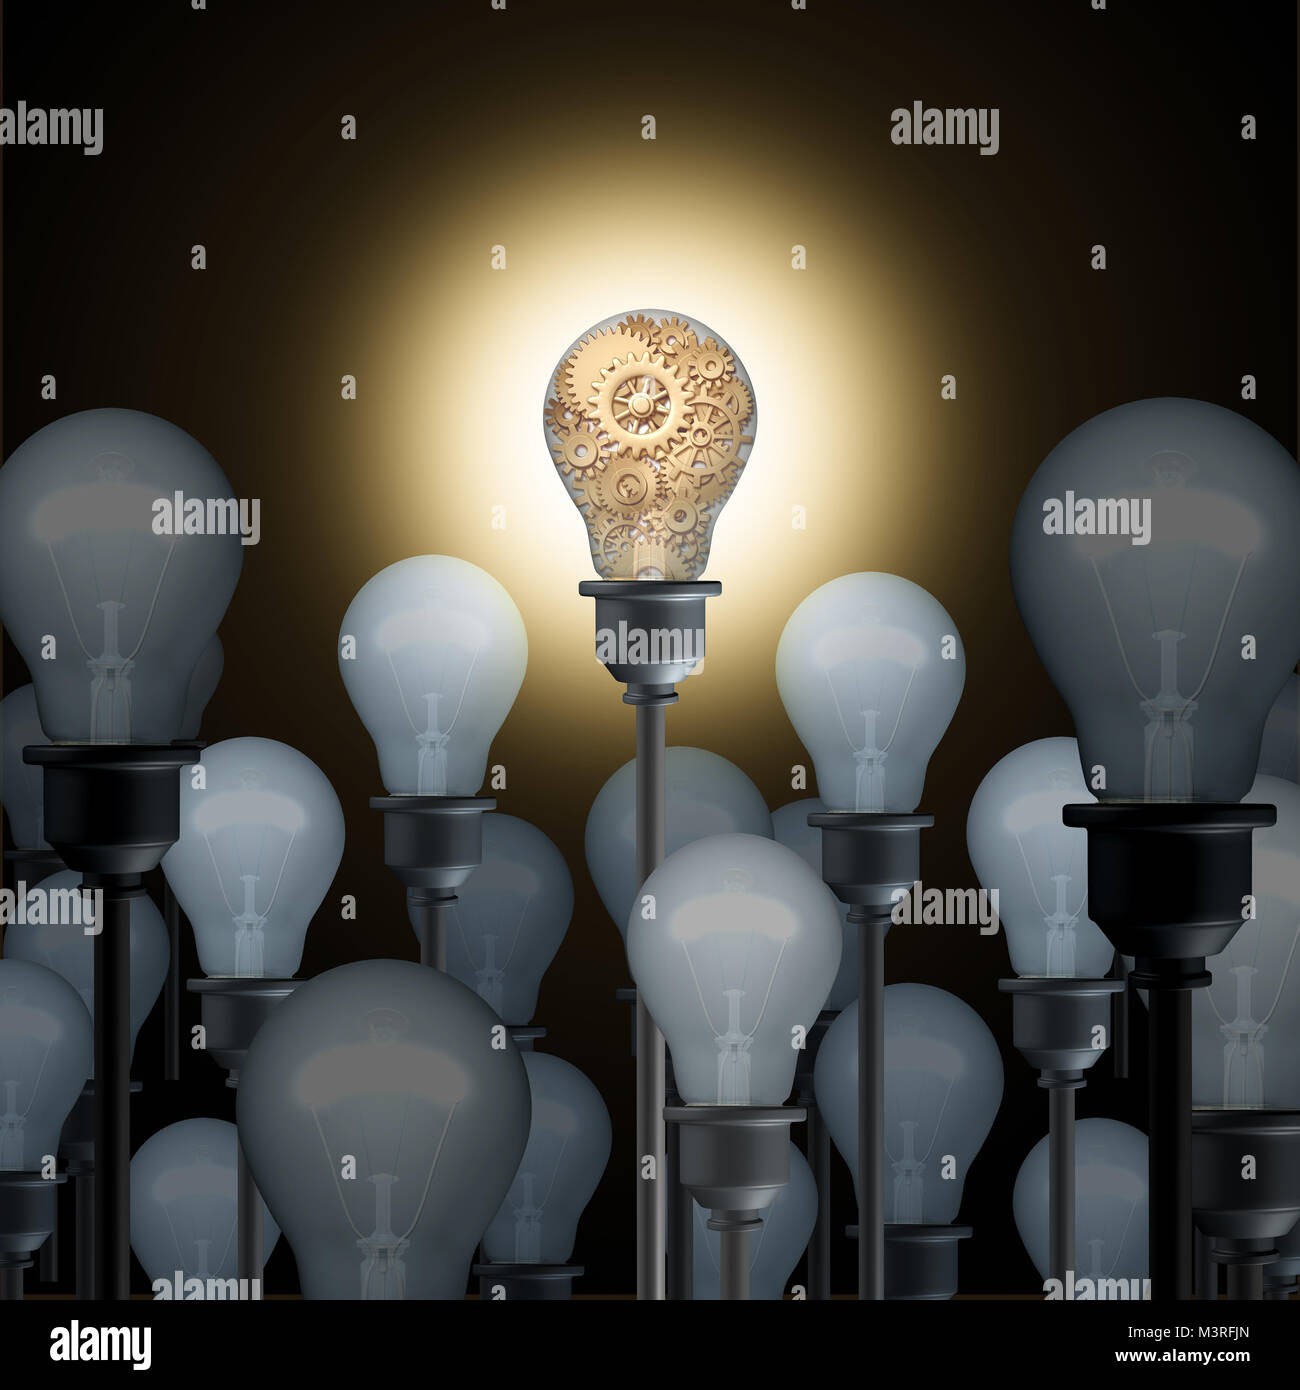 Concept de l'innovation avec les ampoules électriques, une entreprise ou une industrie de l'ingéniosité et la technologie de l'idée de l'inspiration comme un symbole 3D illustration. Banque D'Images